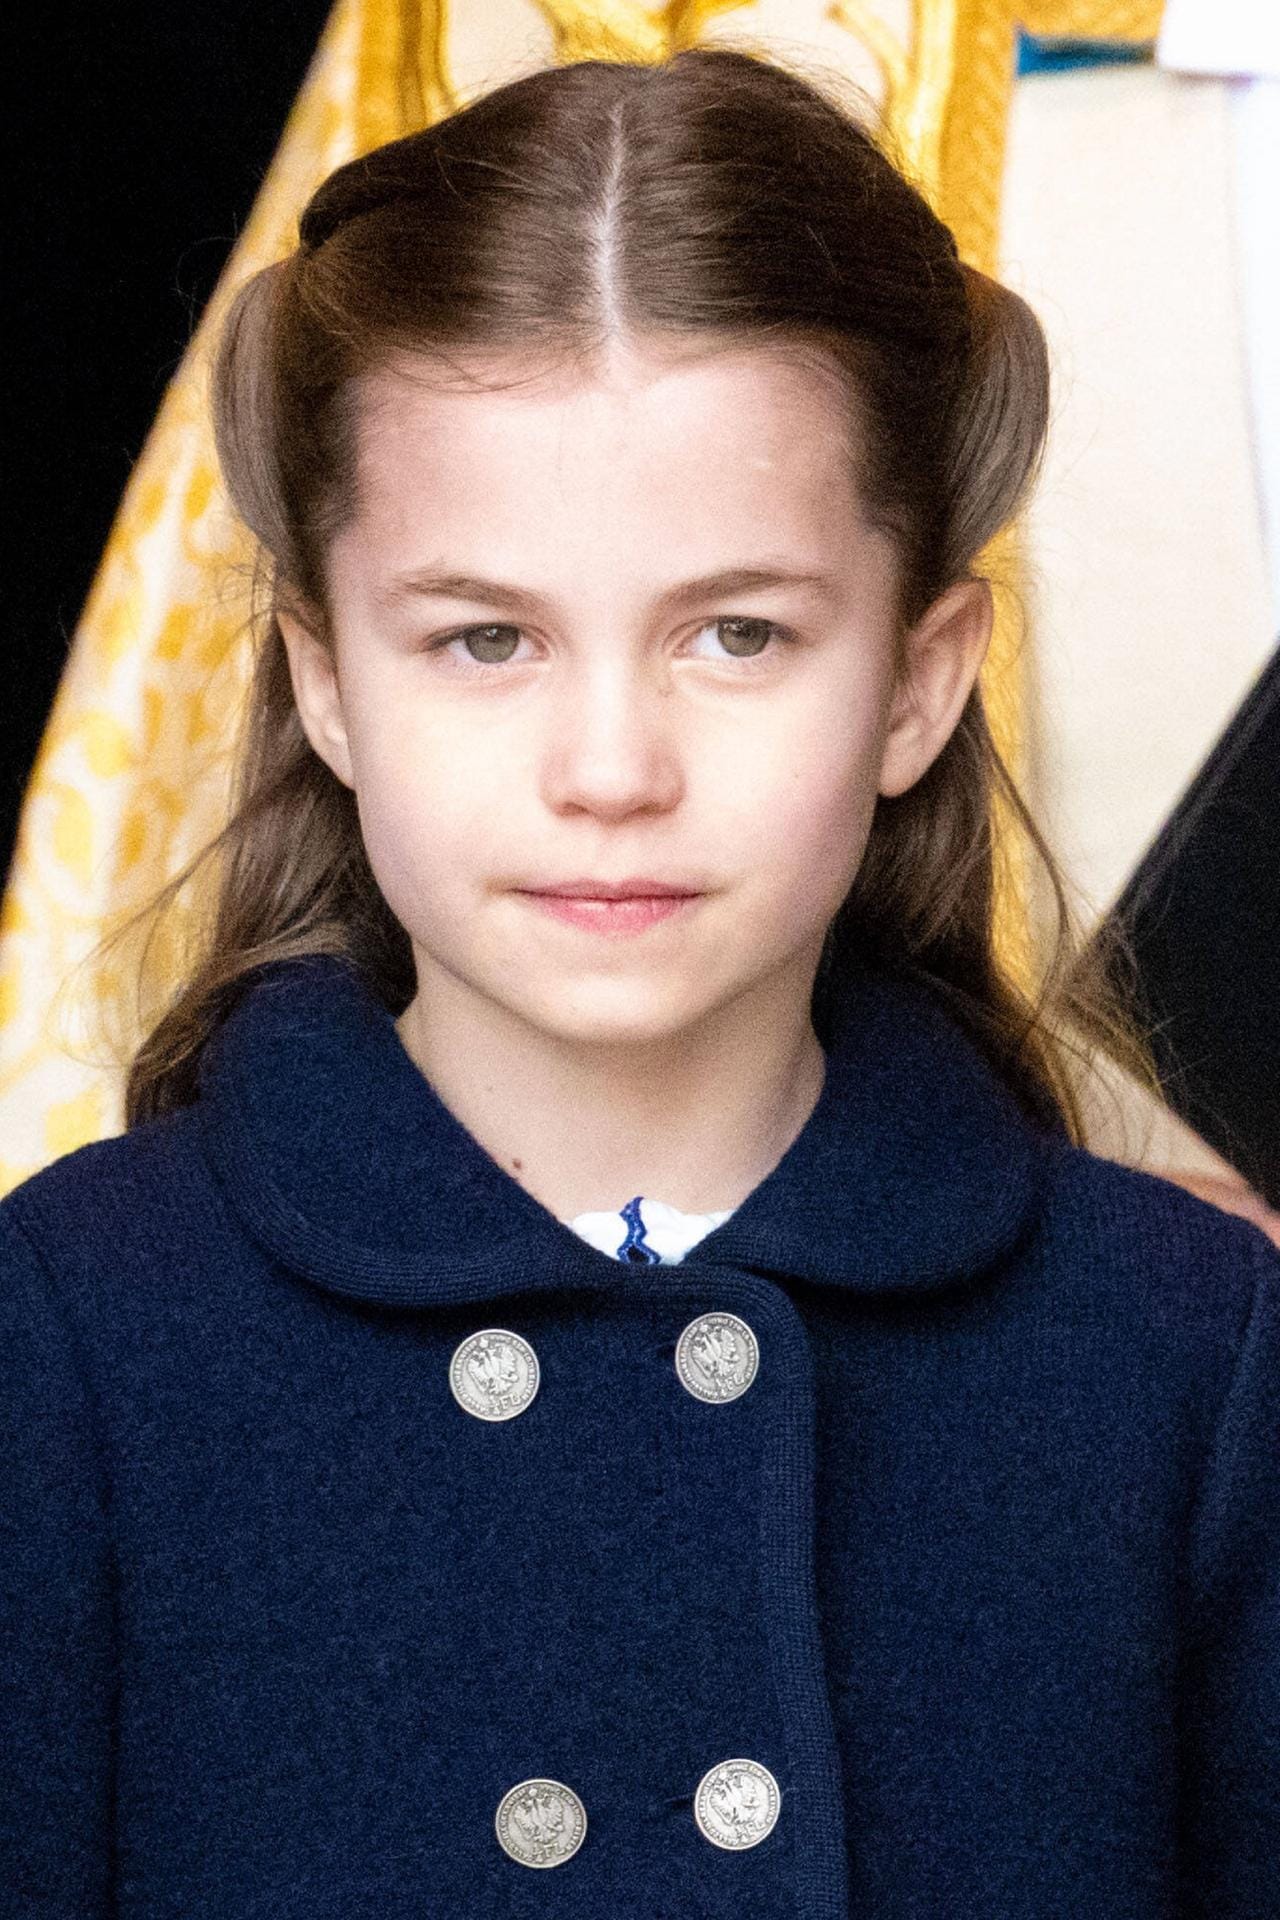 Prinzessin Charlotte (geboren 2015): Sie ist das zweitälteste Kind und erste Tochter von Prinz William